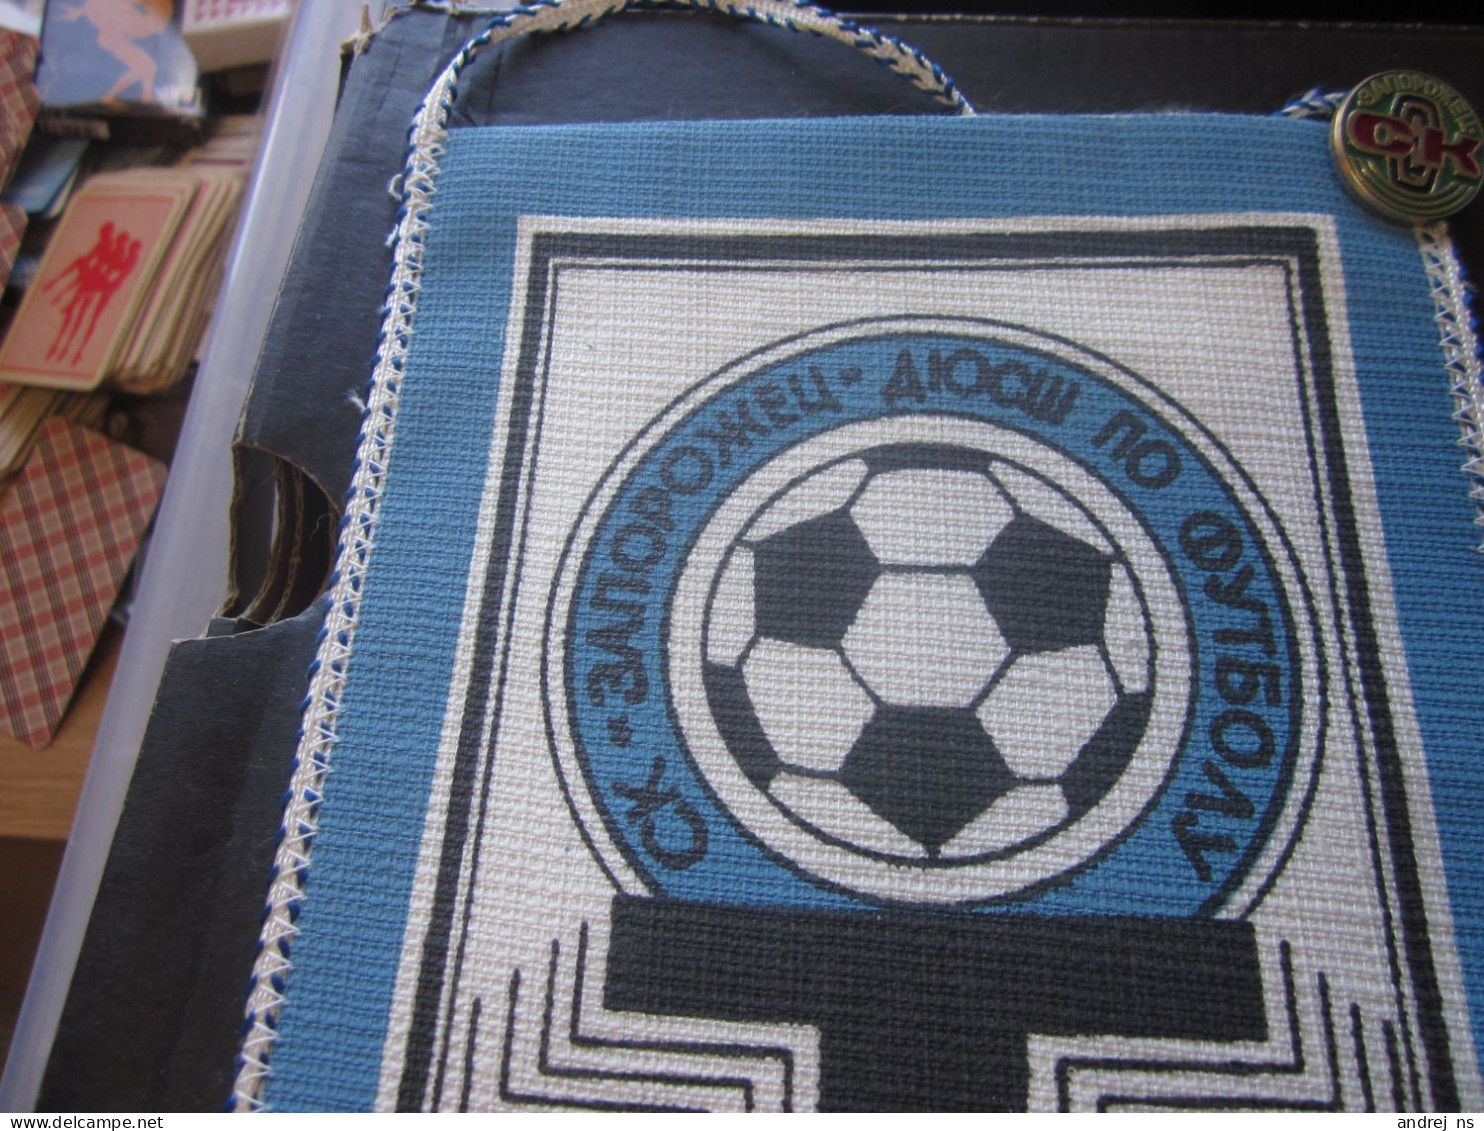 Football SK Zaporozec Falg Pin - Apparel, Souvenirs & Other